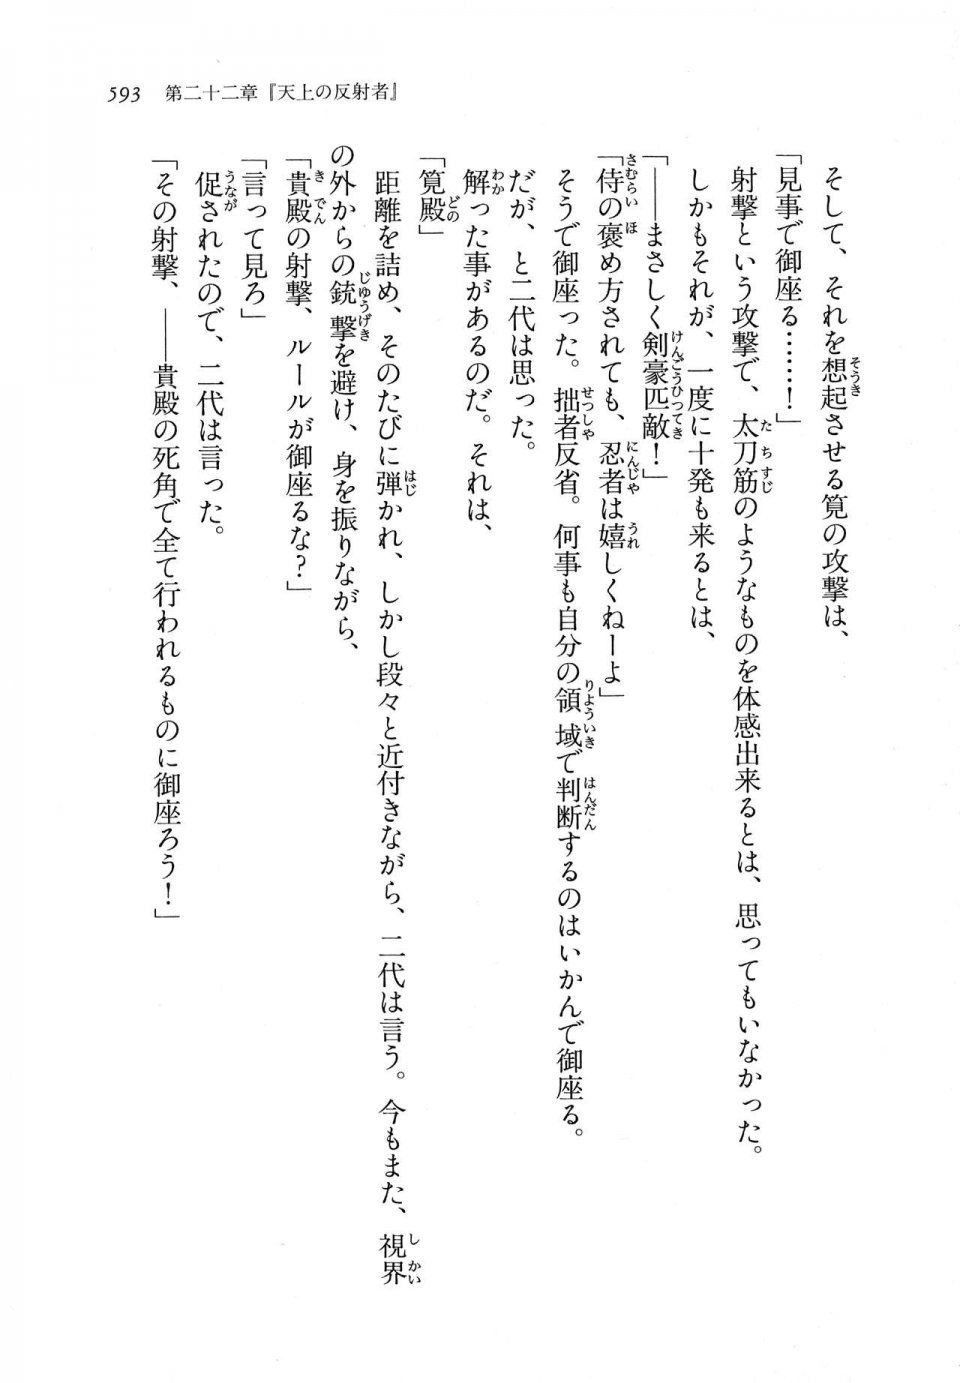 Kyoukai Senjou no Horizon LN Vol 11(5A) - Photo #593